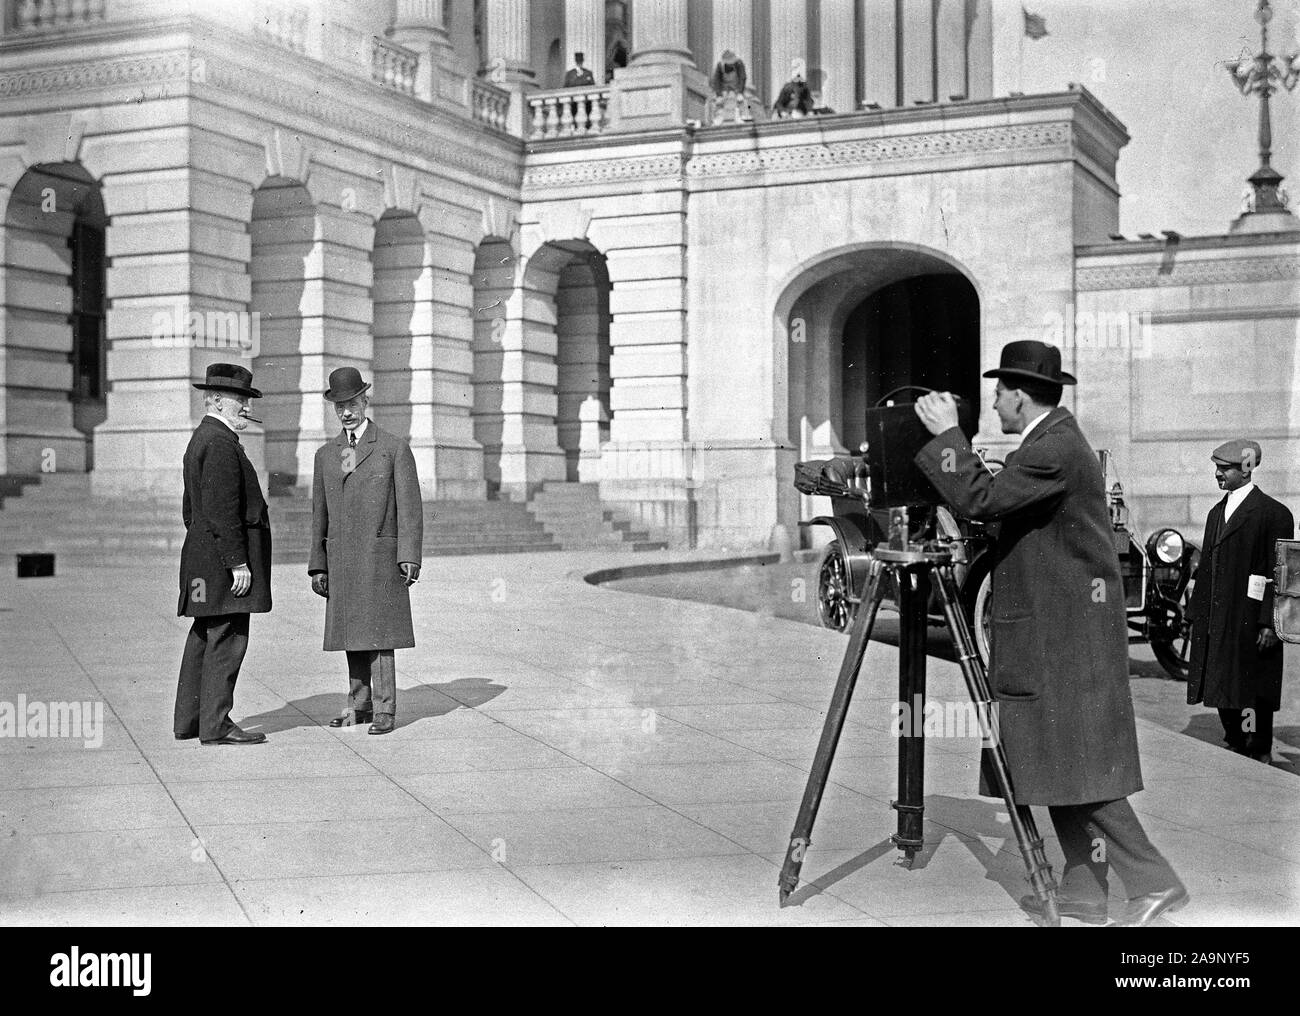 Photographe prendre des photos d'hommes politiques que pose à l'extérieur de la capitale américaine ca. 1910-1917 Banque D'Images